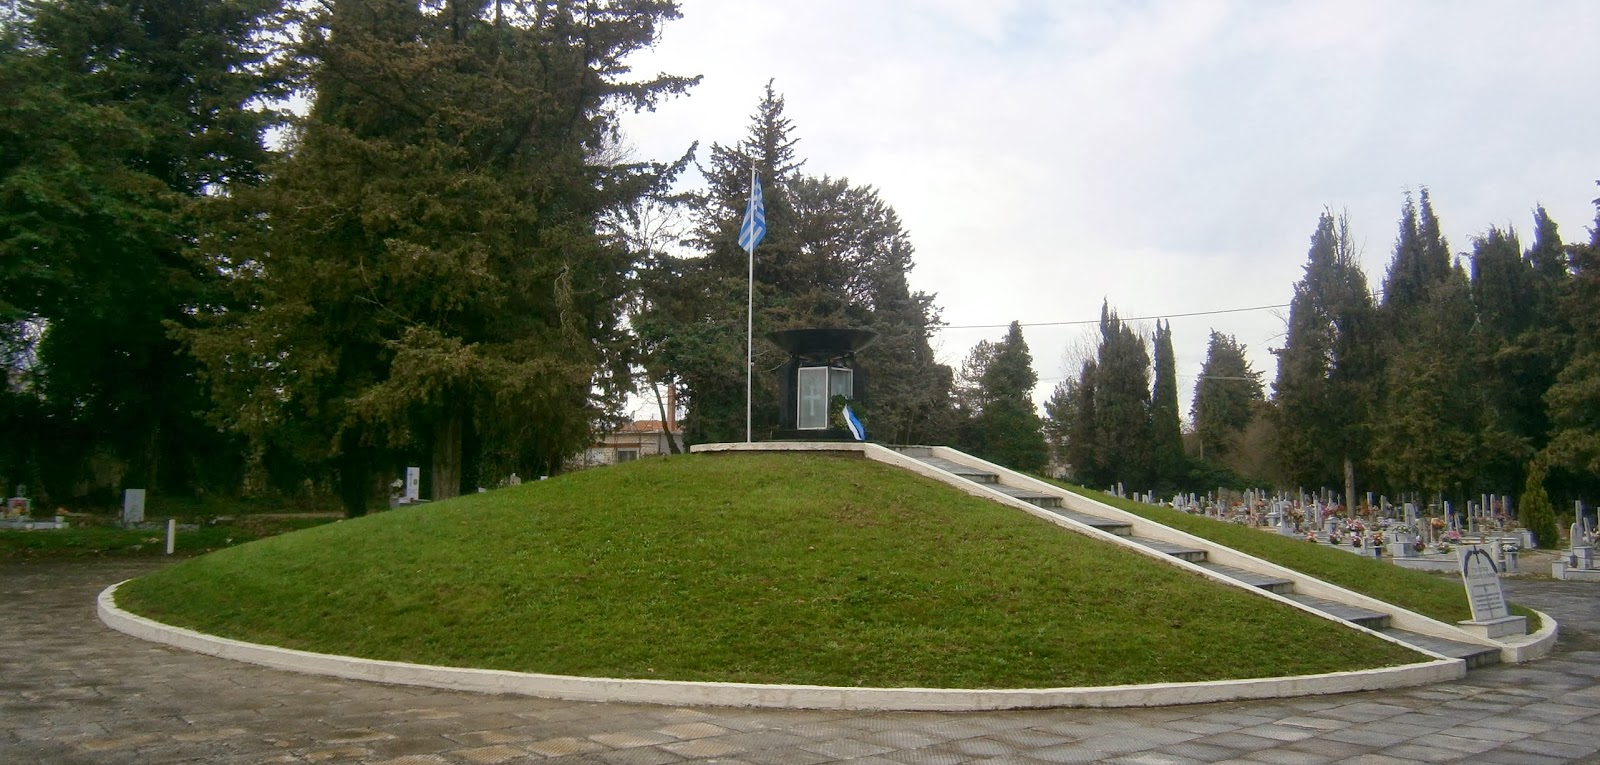 το Στρατιωτικό Μαυσωλείο στο Α΄ Δημοτικό Νεκροταφείο Ιωαννίνων